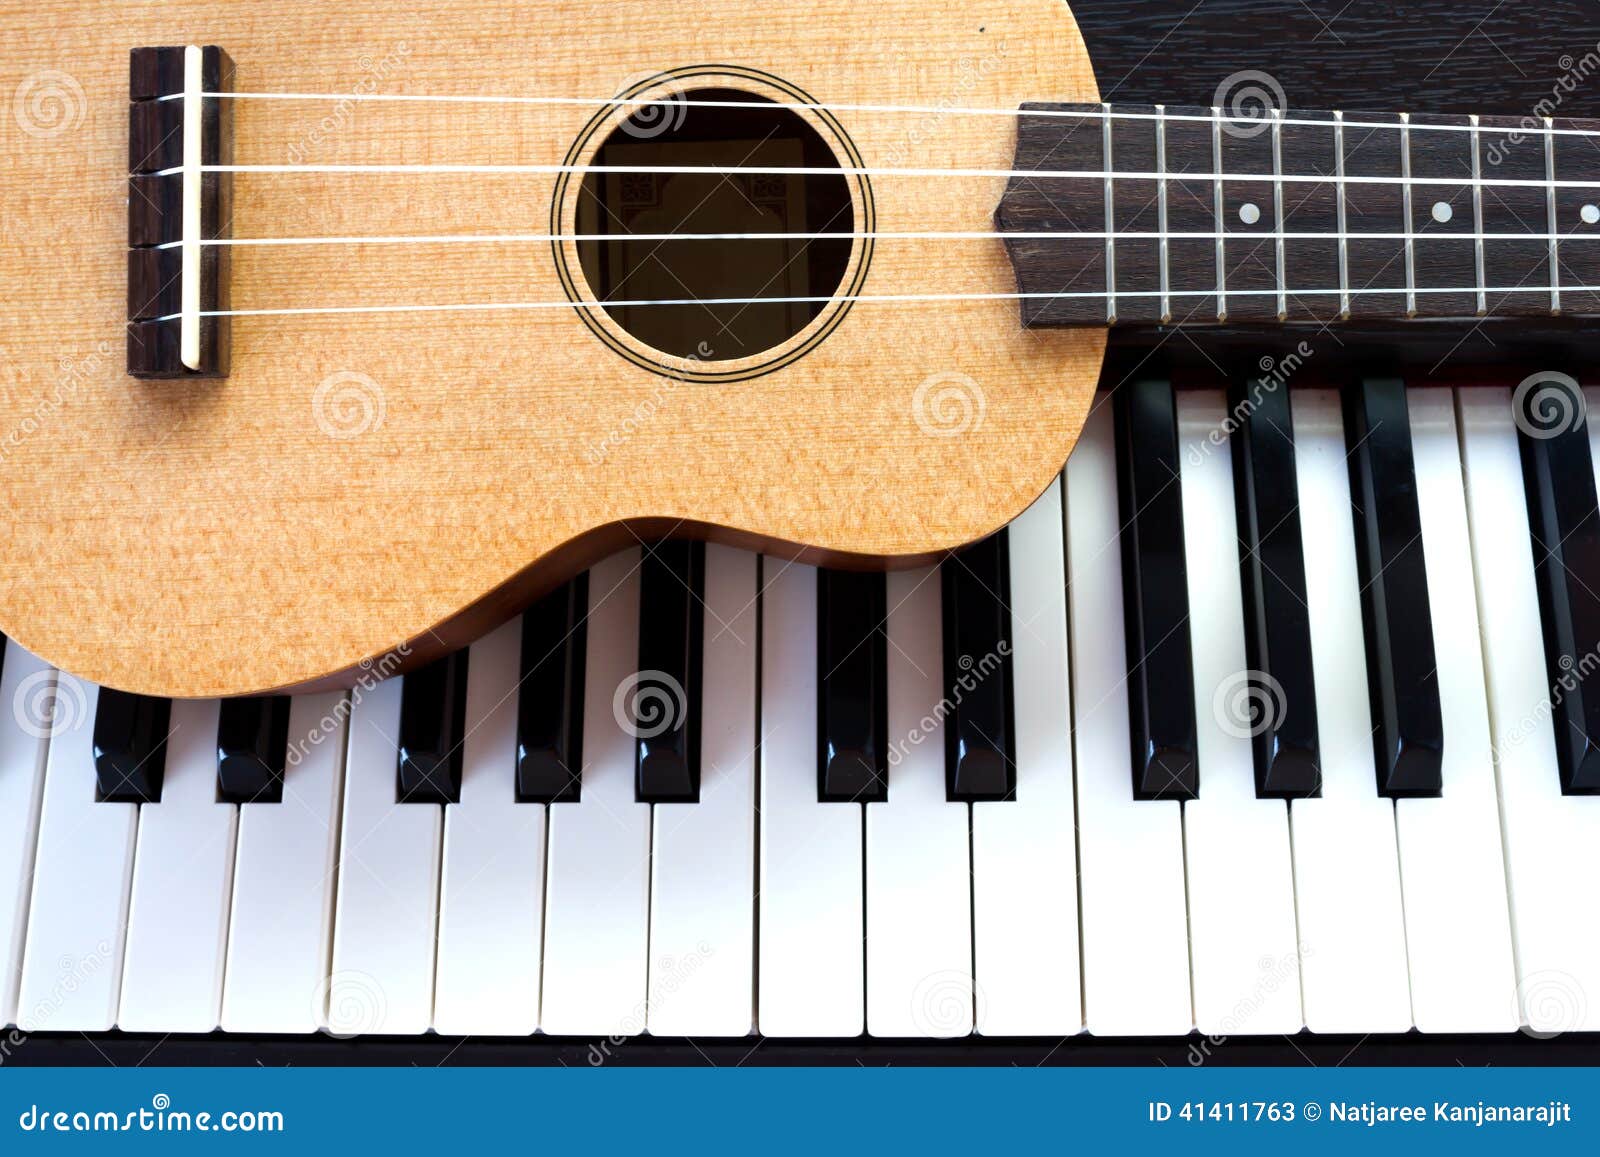 piano and ukulele